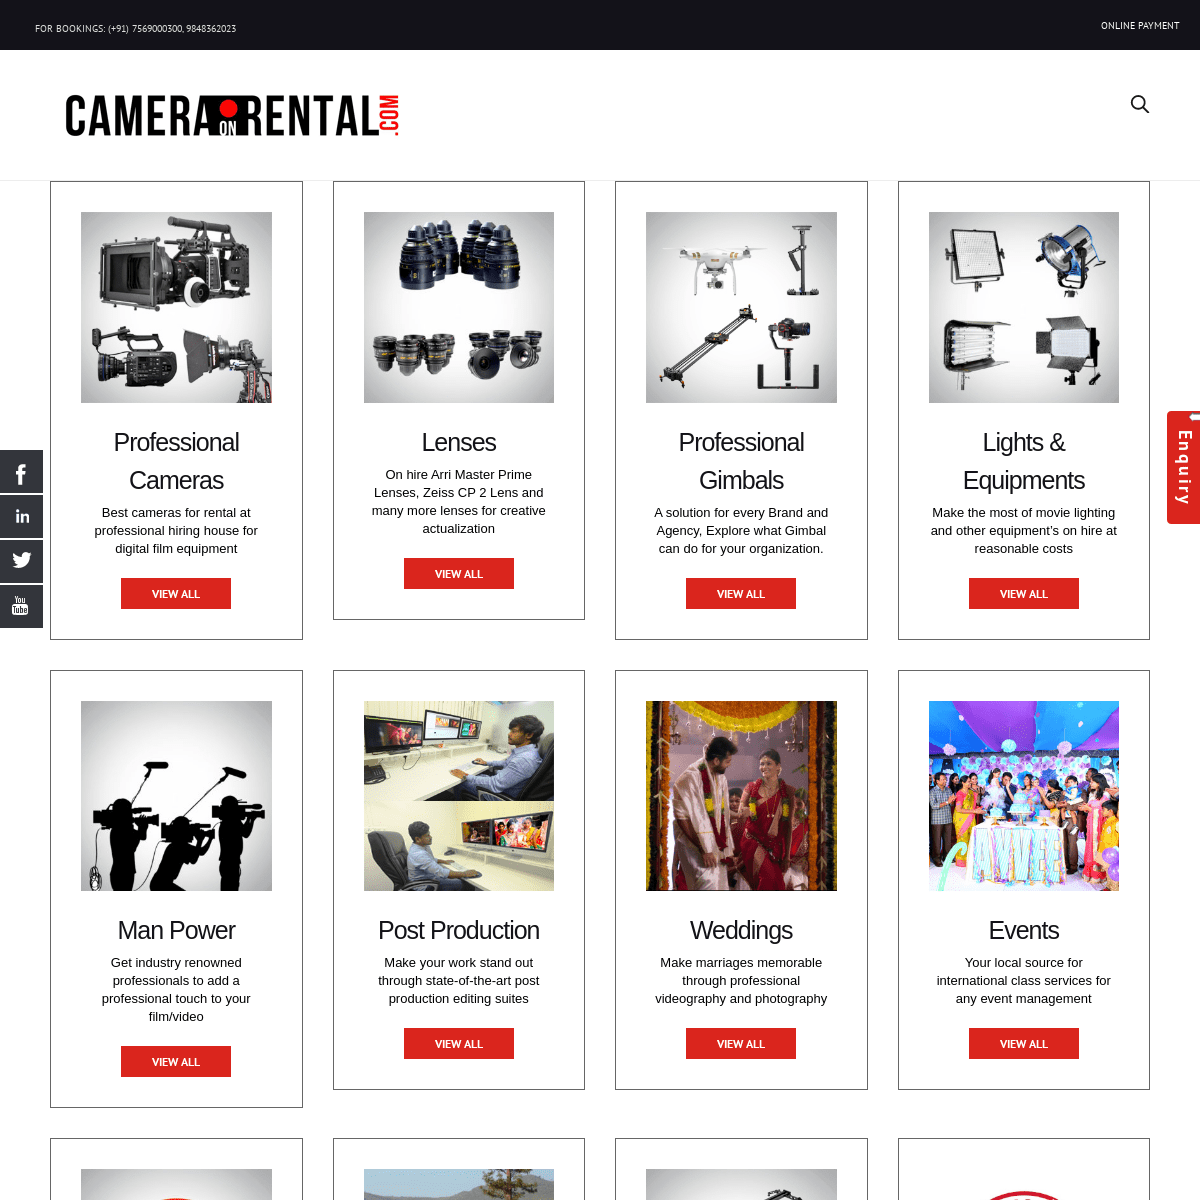 A complete backup of cameraonrental.com